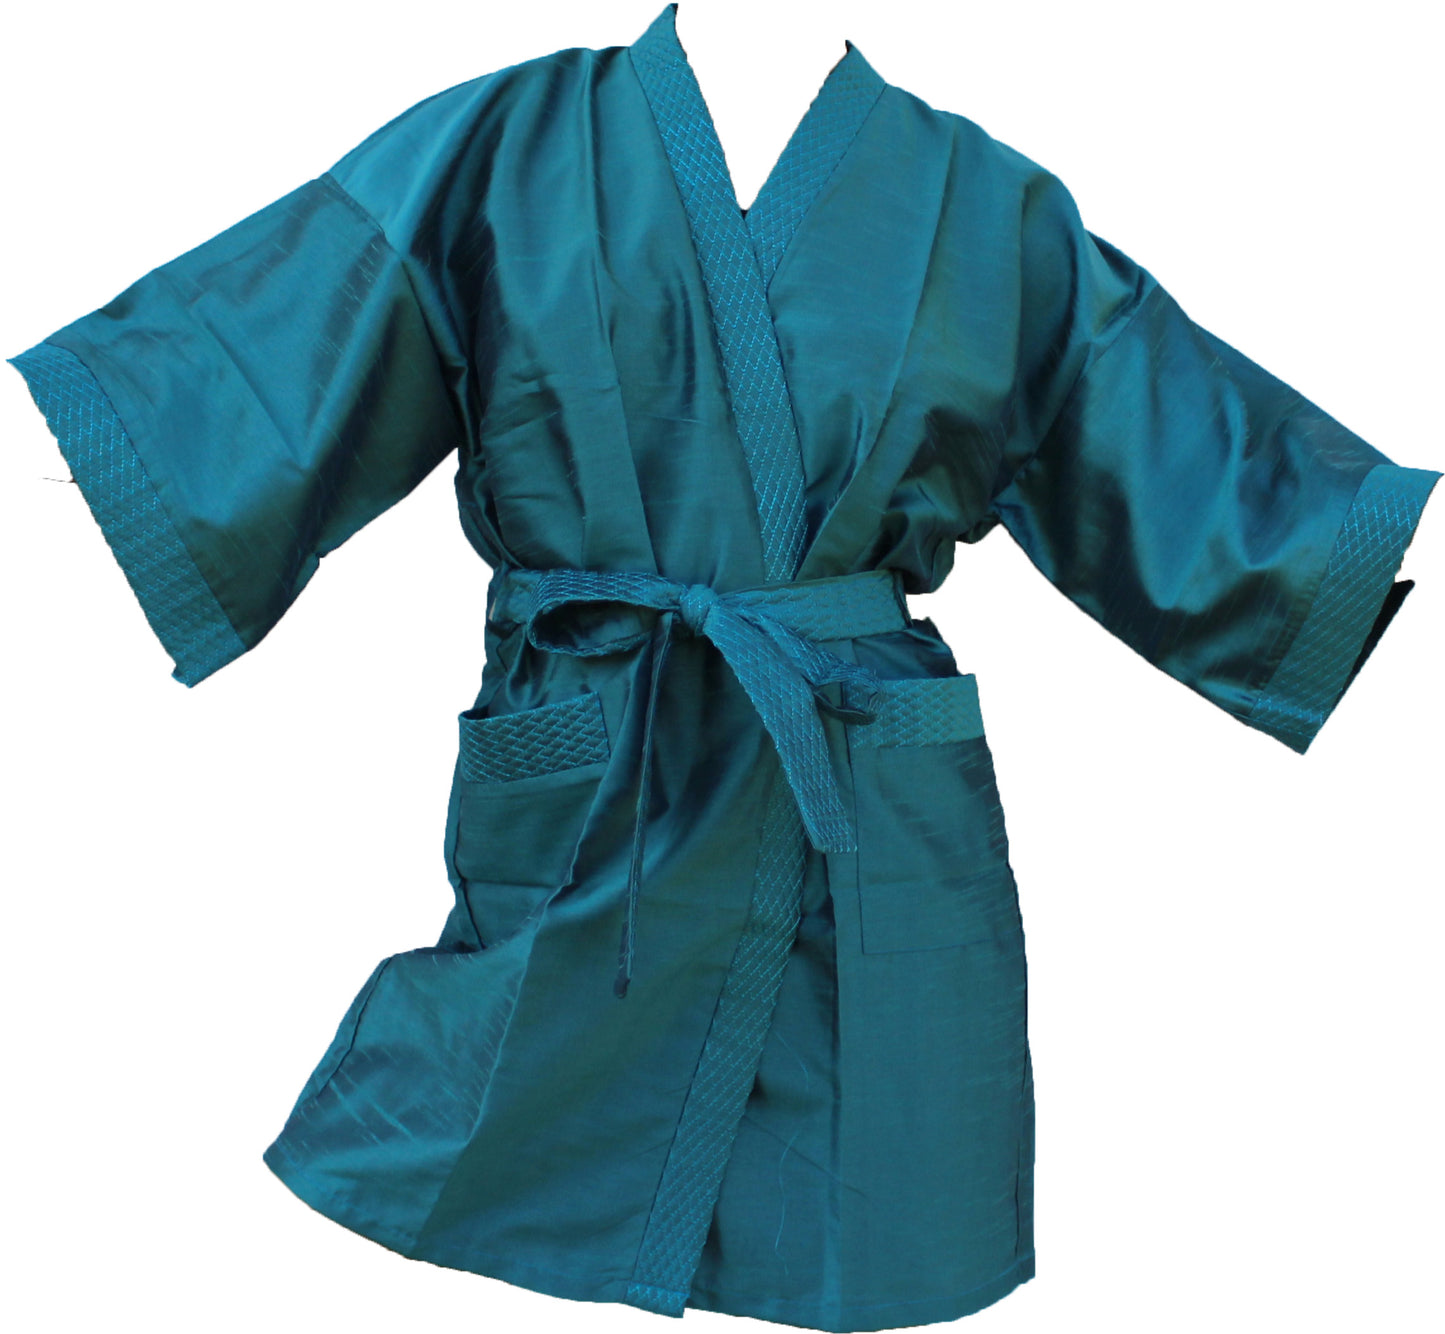 Kimono Robe Damen Long Satin Bademantel Seide Leichter seidiger Bademantel für Brautjungfern Brautparty Loungewear mit Taschen